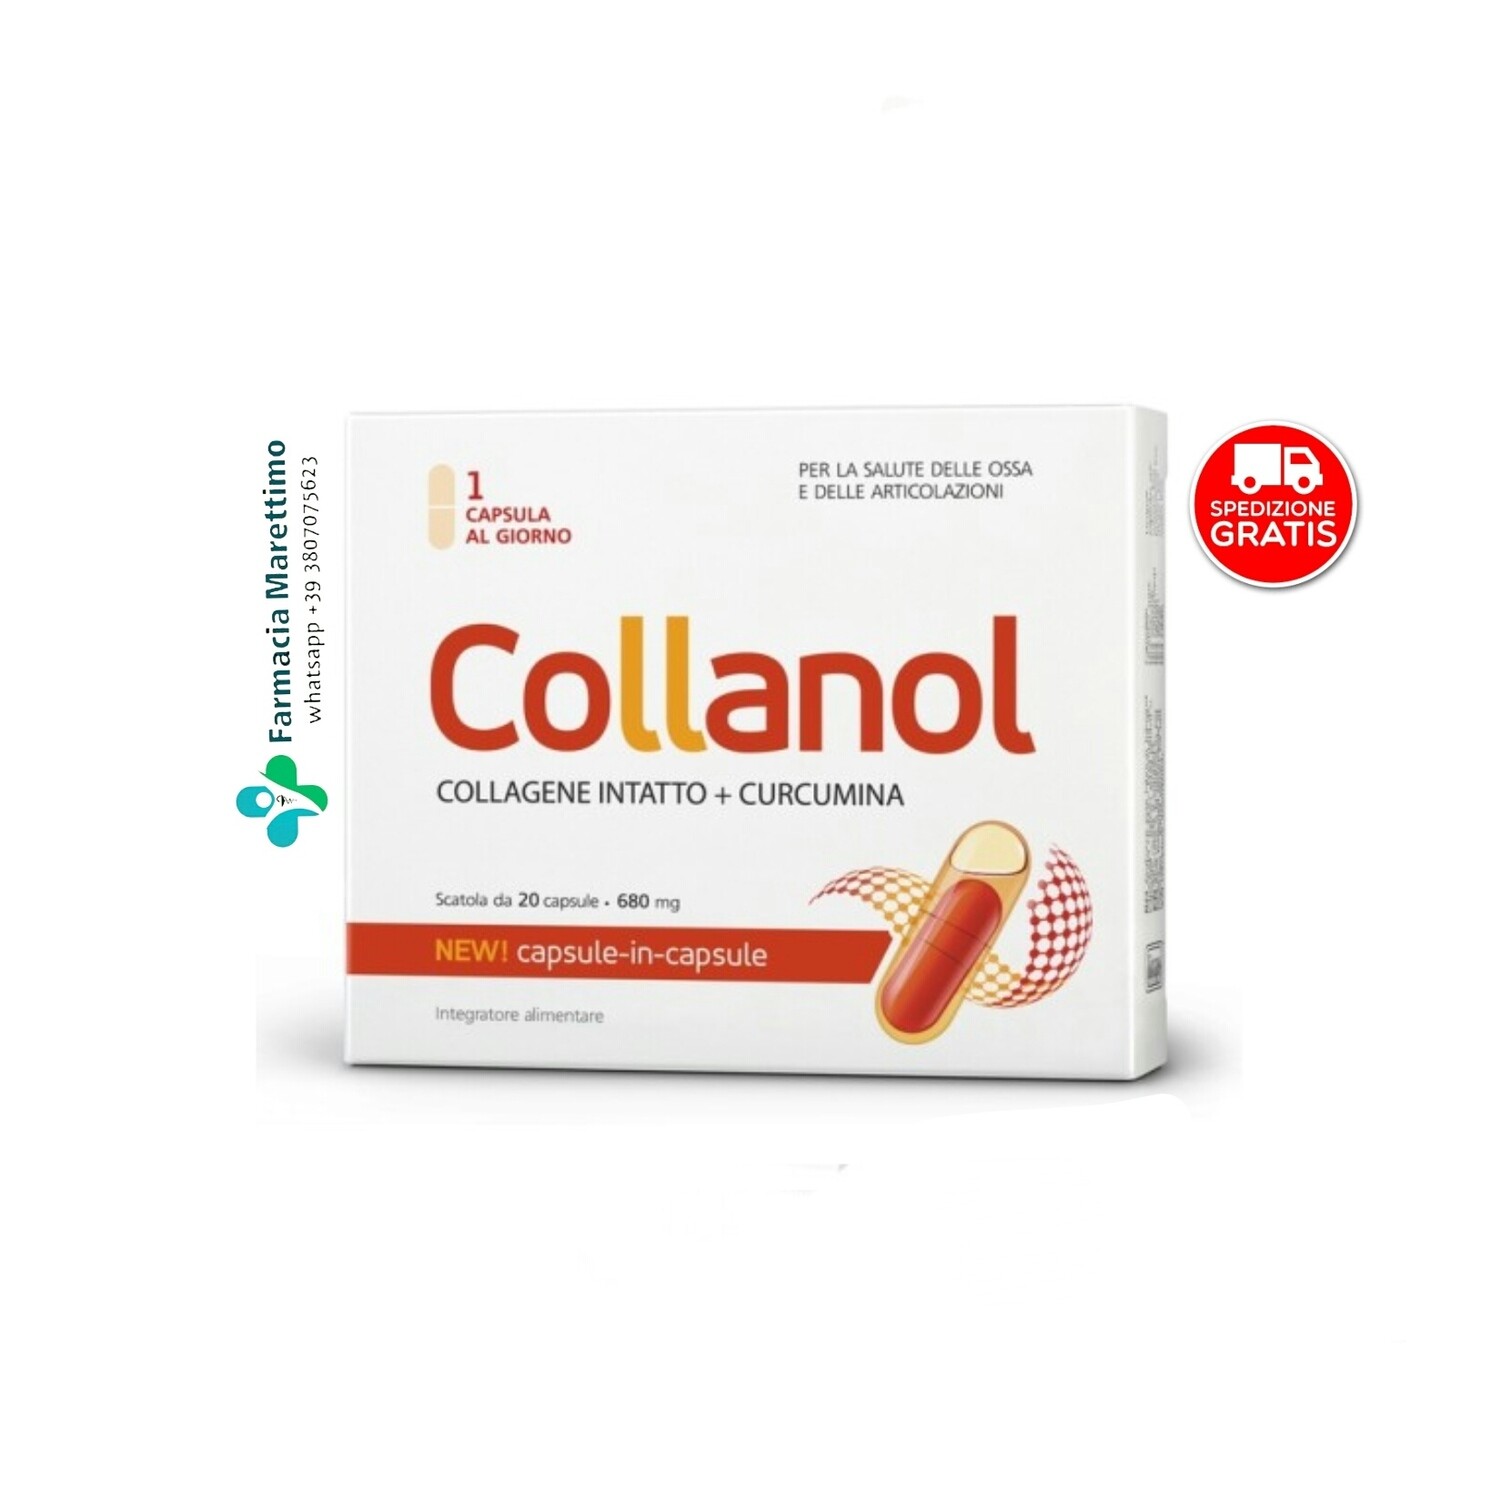 🎯 Collanol 680 mg 20 capsule (collagene intatto + curcuma). Integratore alimentare per mantenere le normali condizioni delle ossa e delle articolazioni.